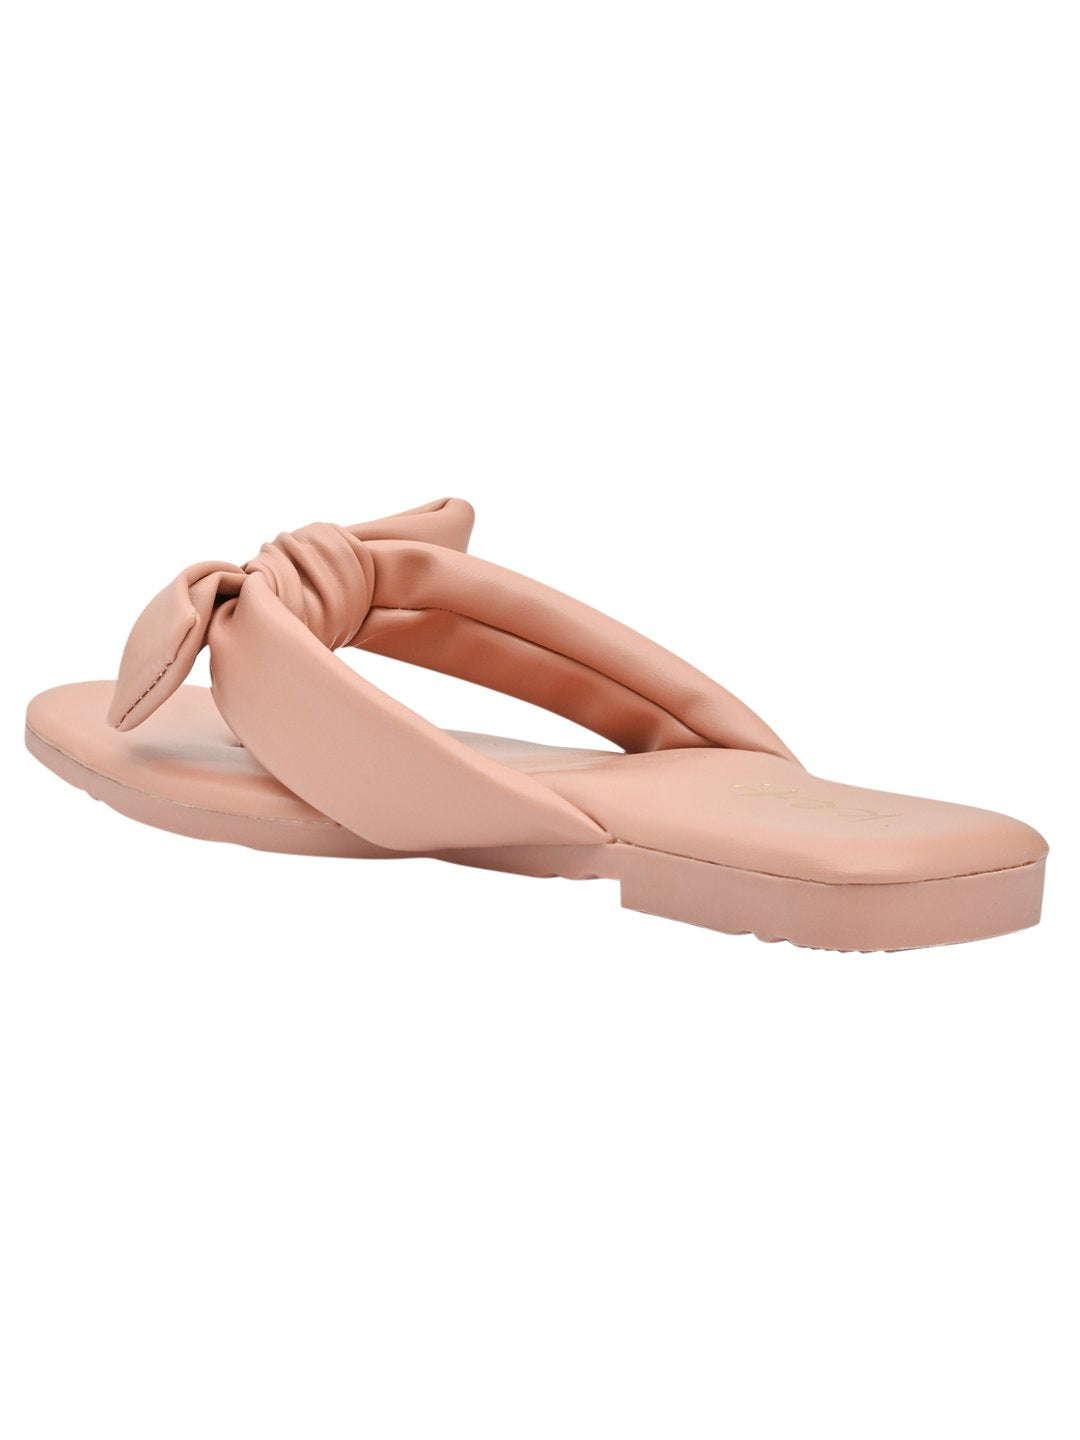 Women Footwear, Pink T-Strap Flats